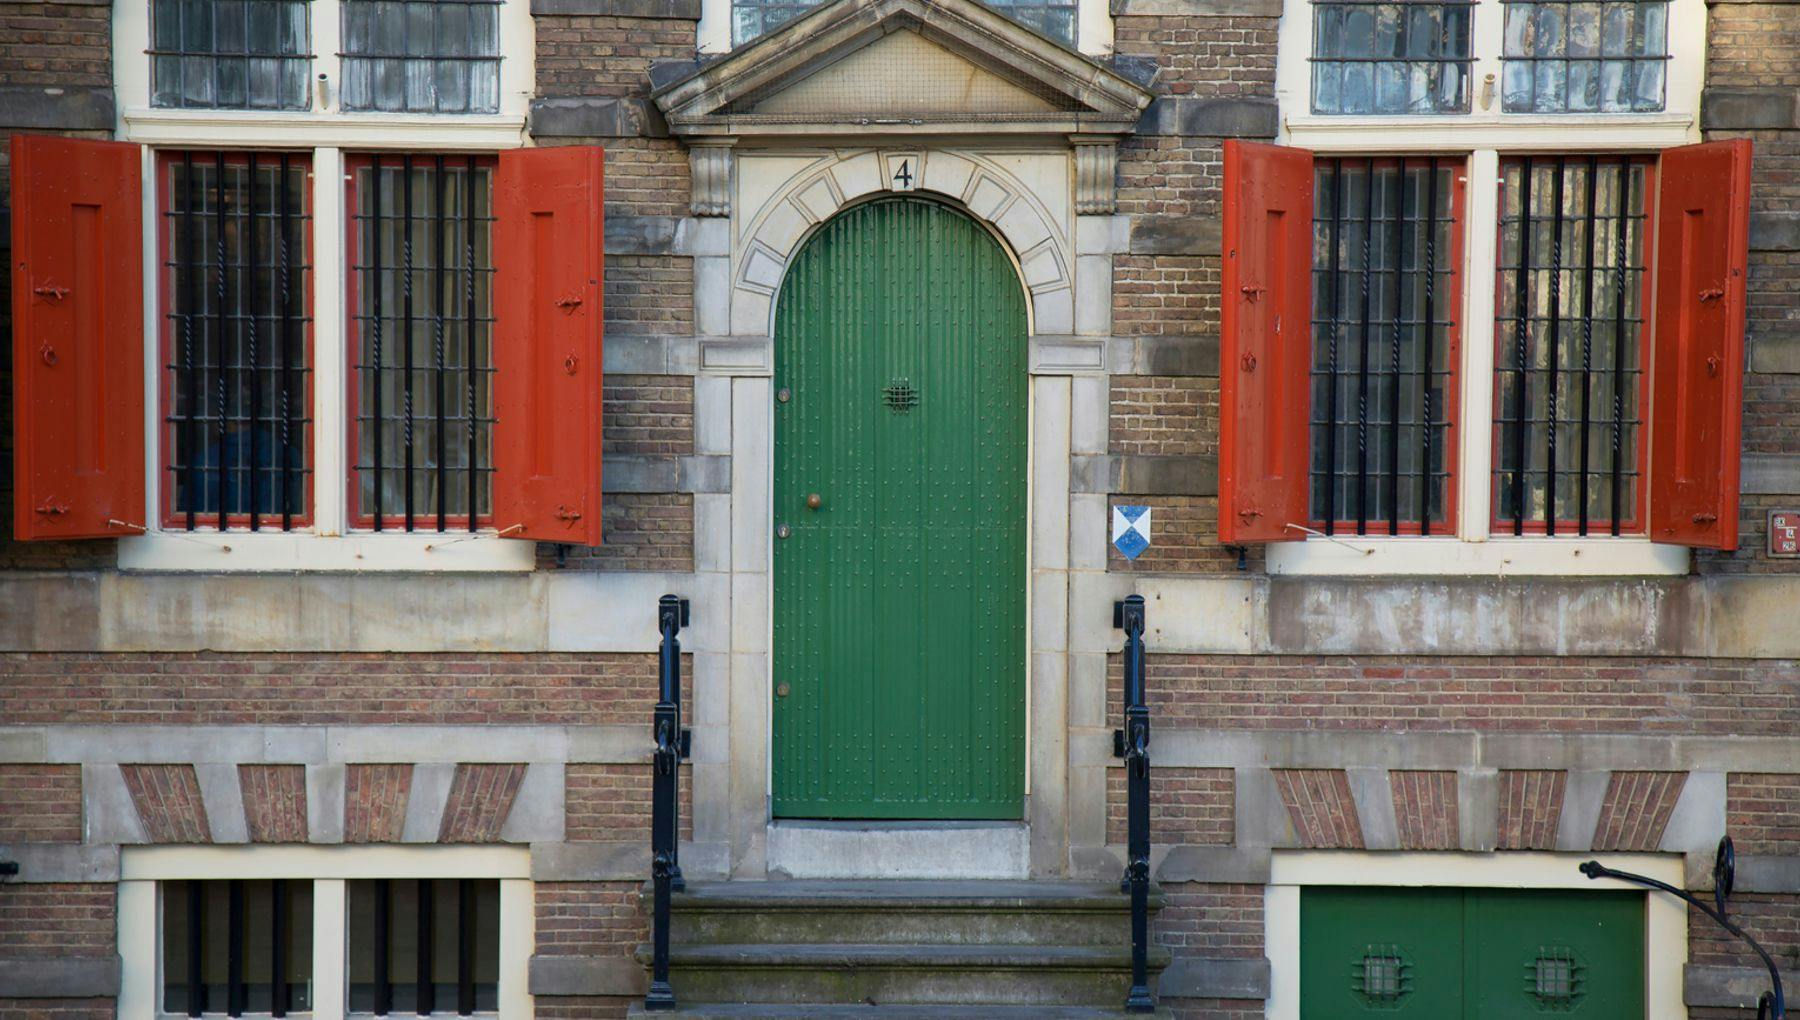 The green door facade of Museum Rembrandthuis.